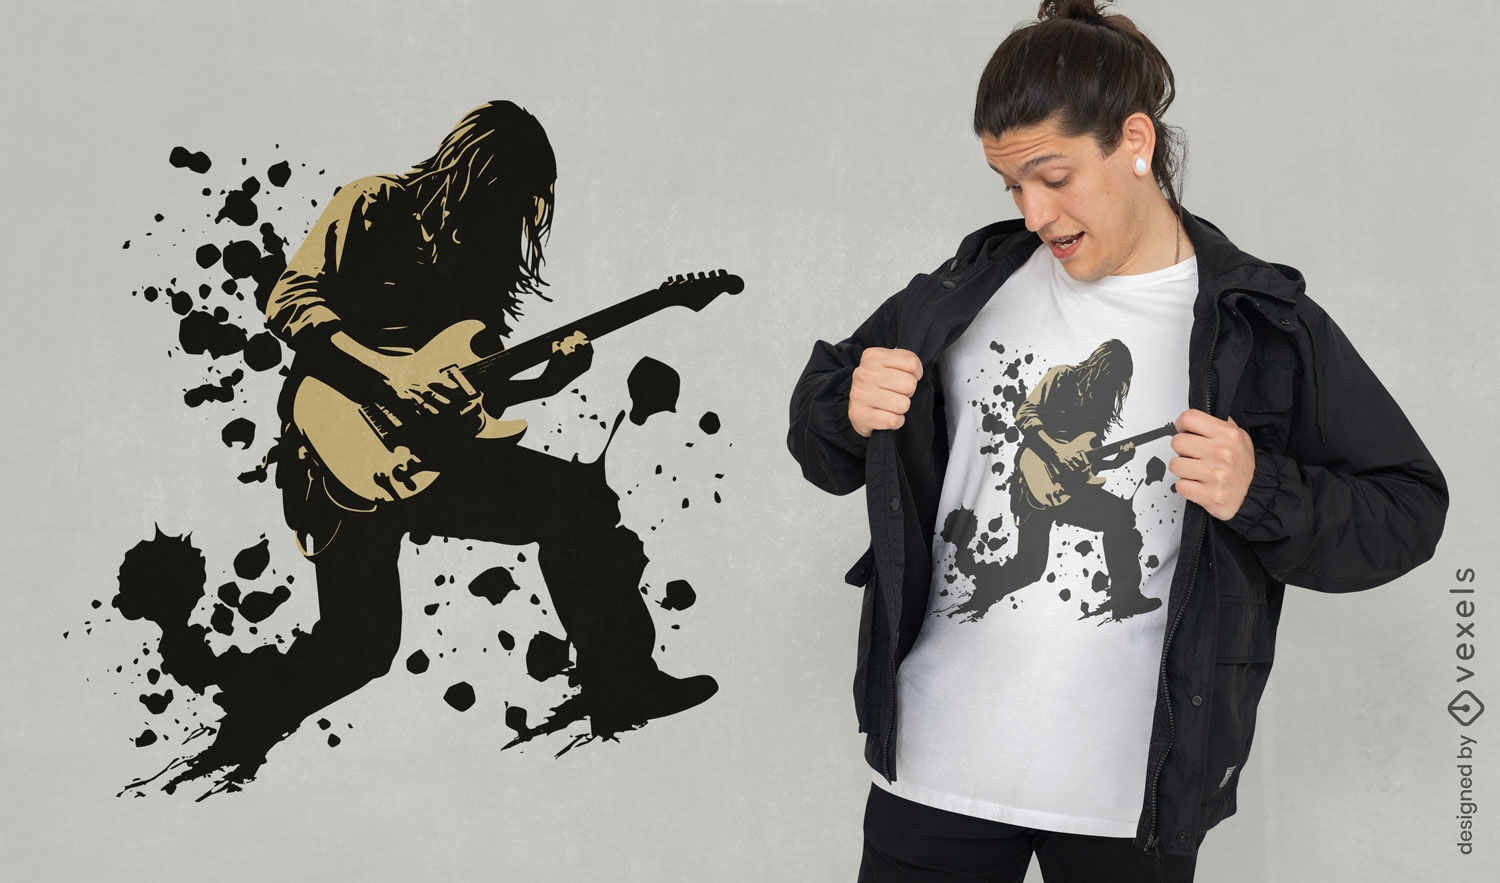 Rockstar-Gitarristen-T-Shirt-Design